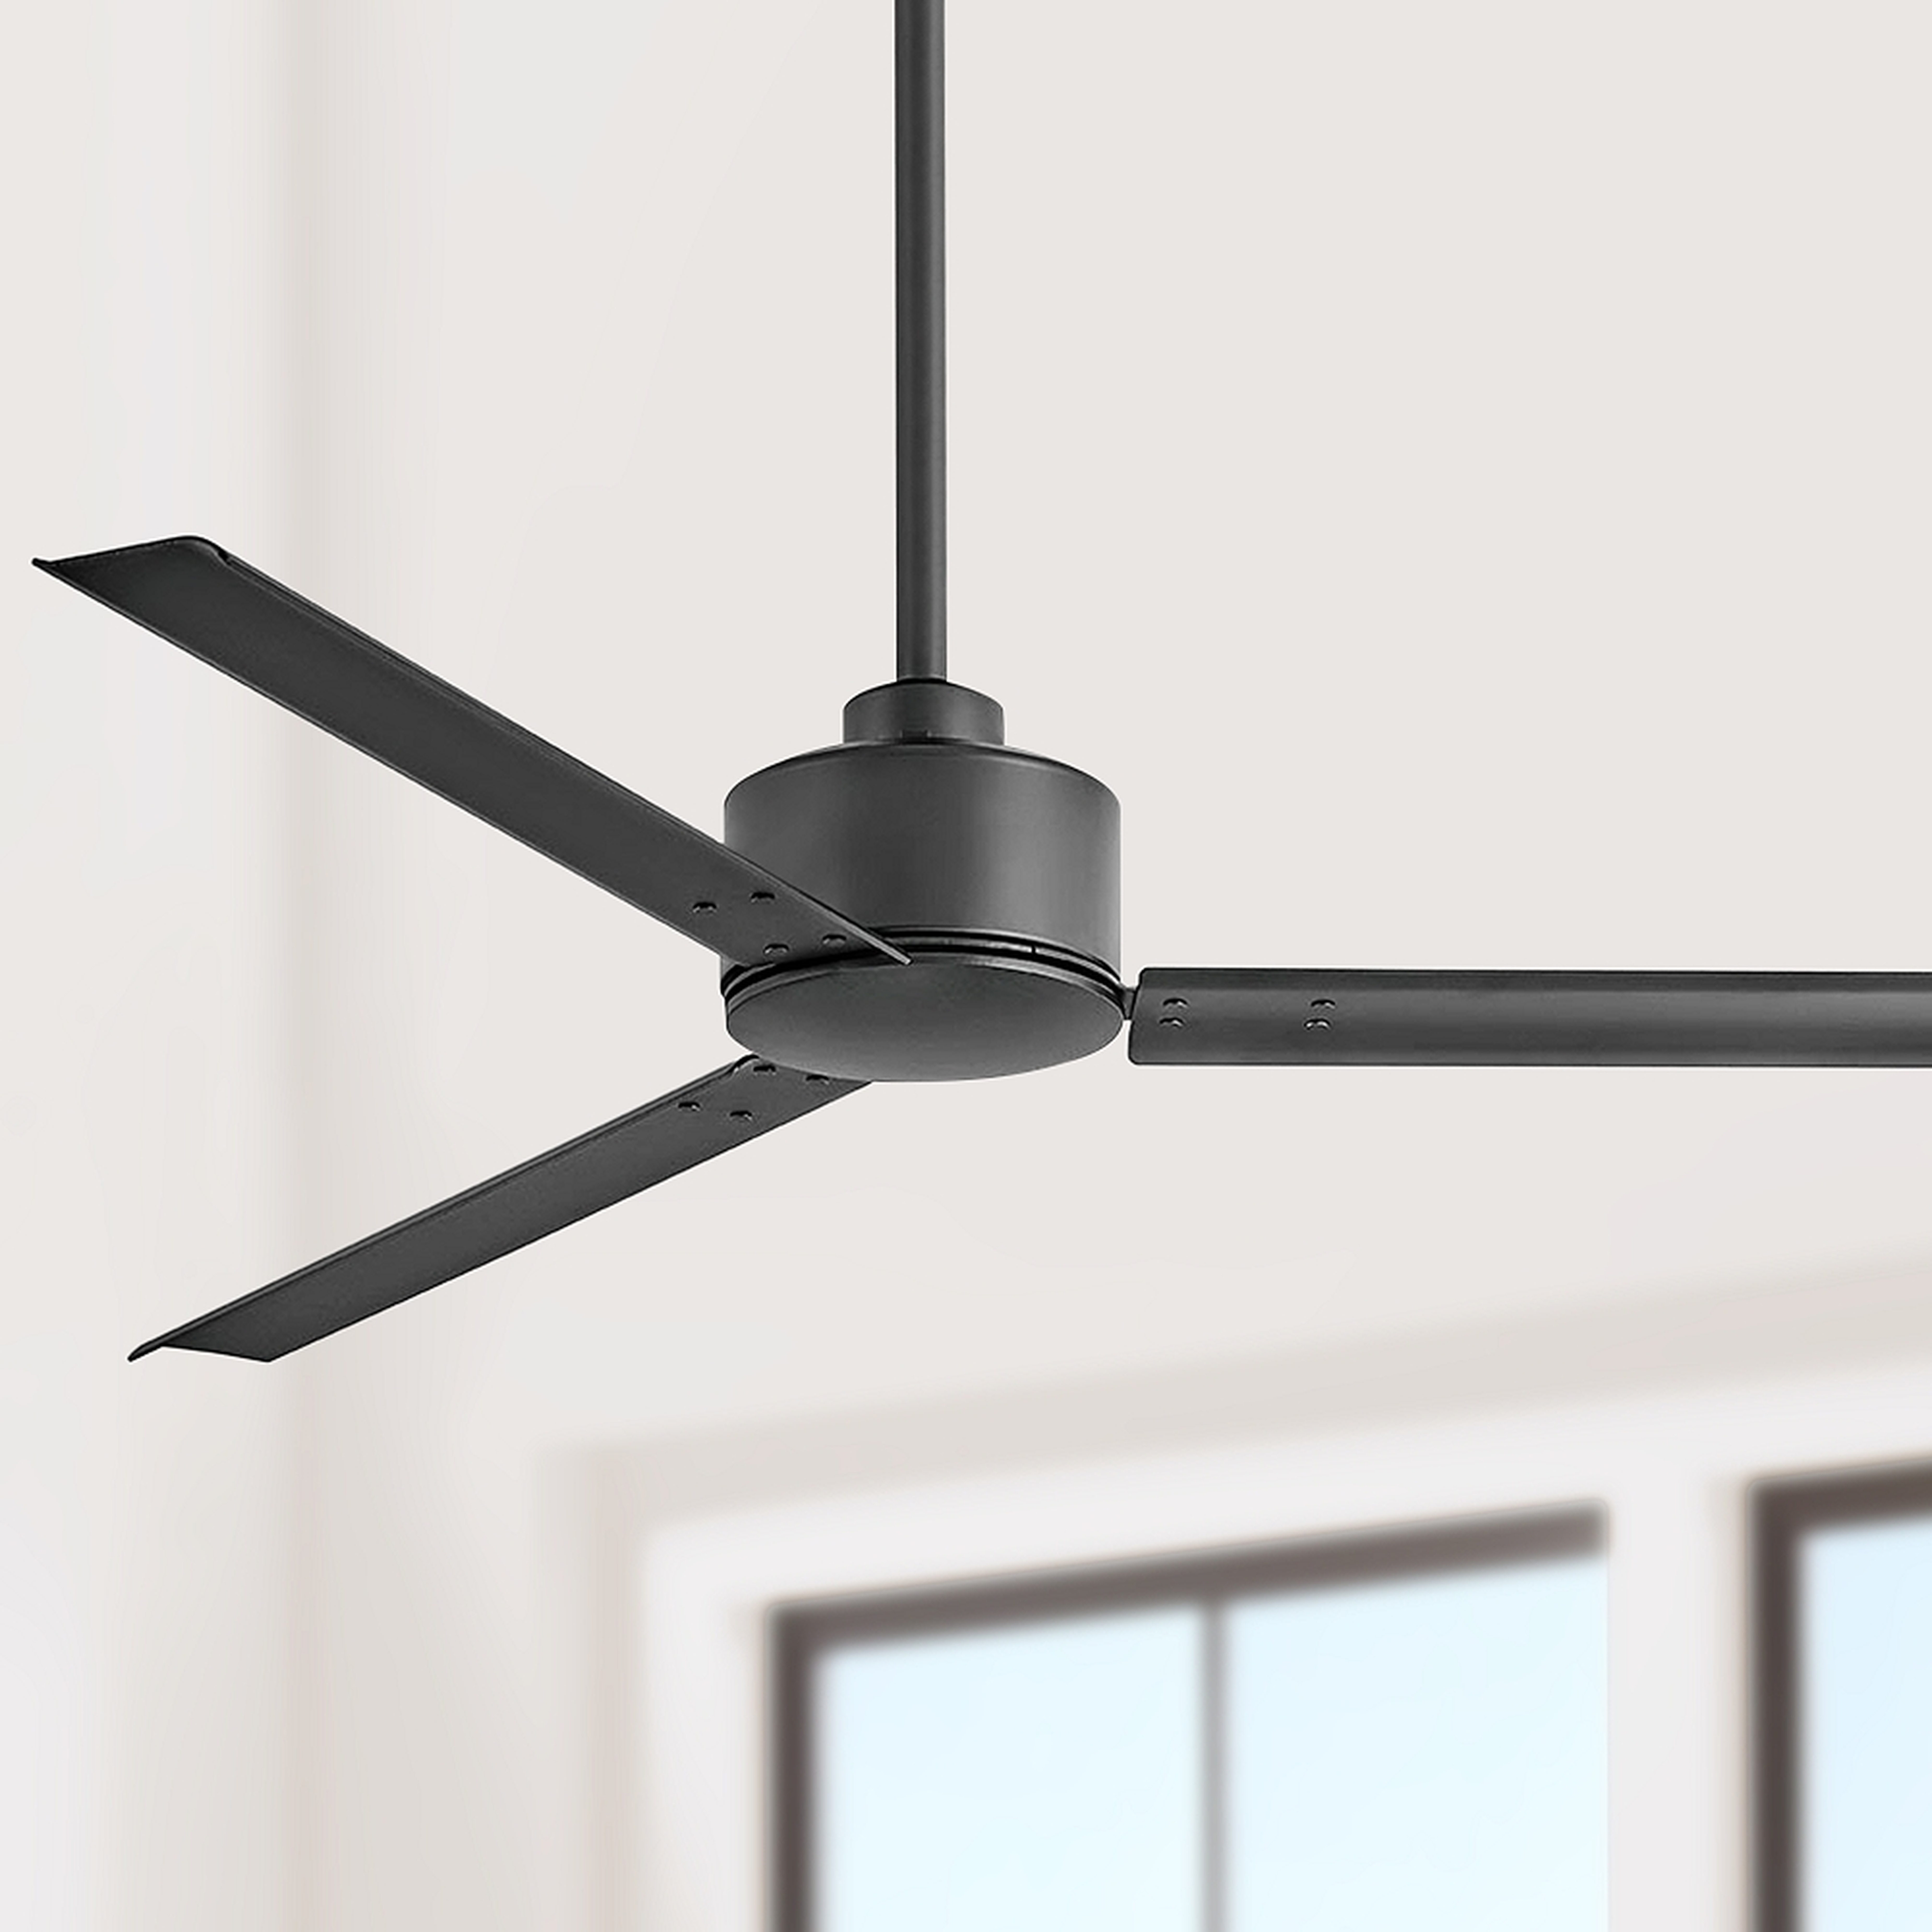 56" Hinkley Indy Matte Black Ceiling Fan - Style # 84K02 - Lamps Plus